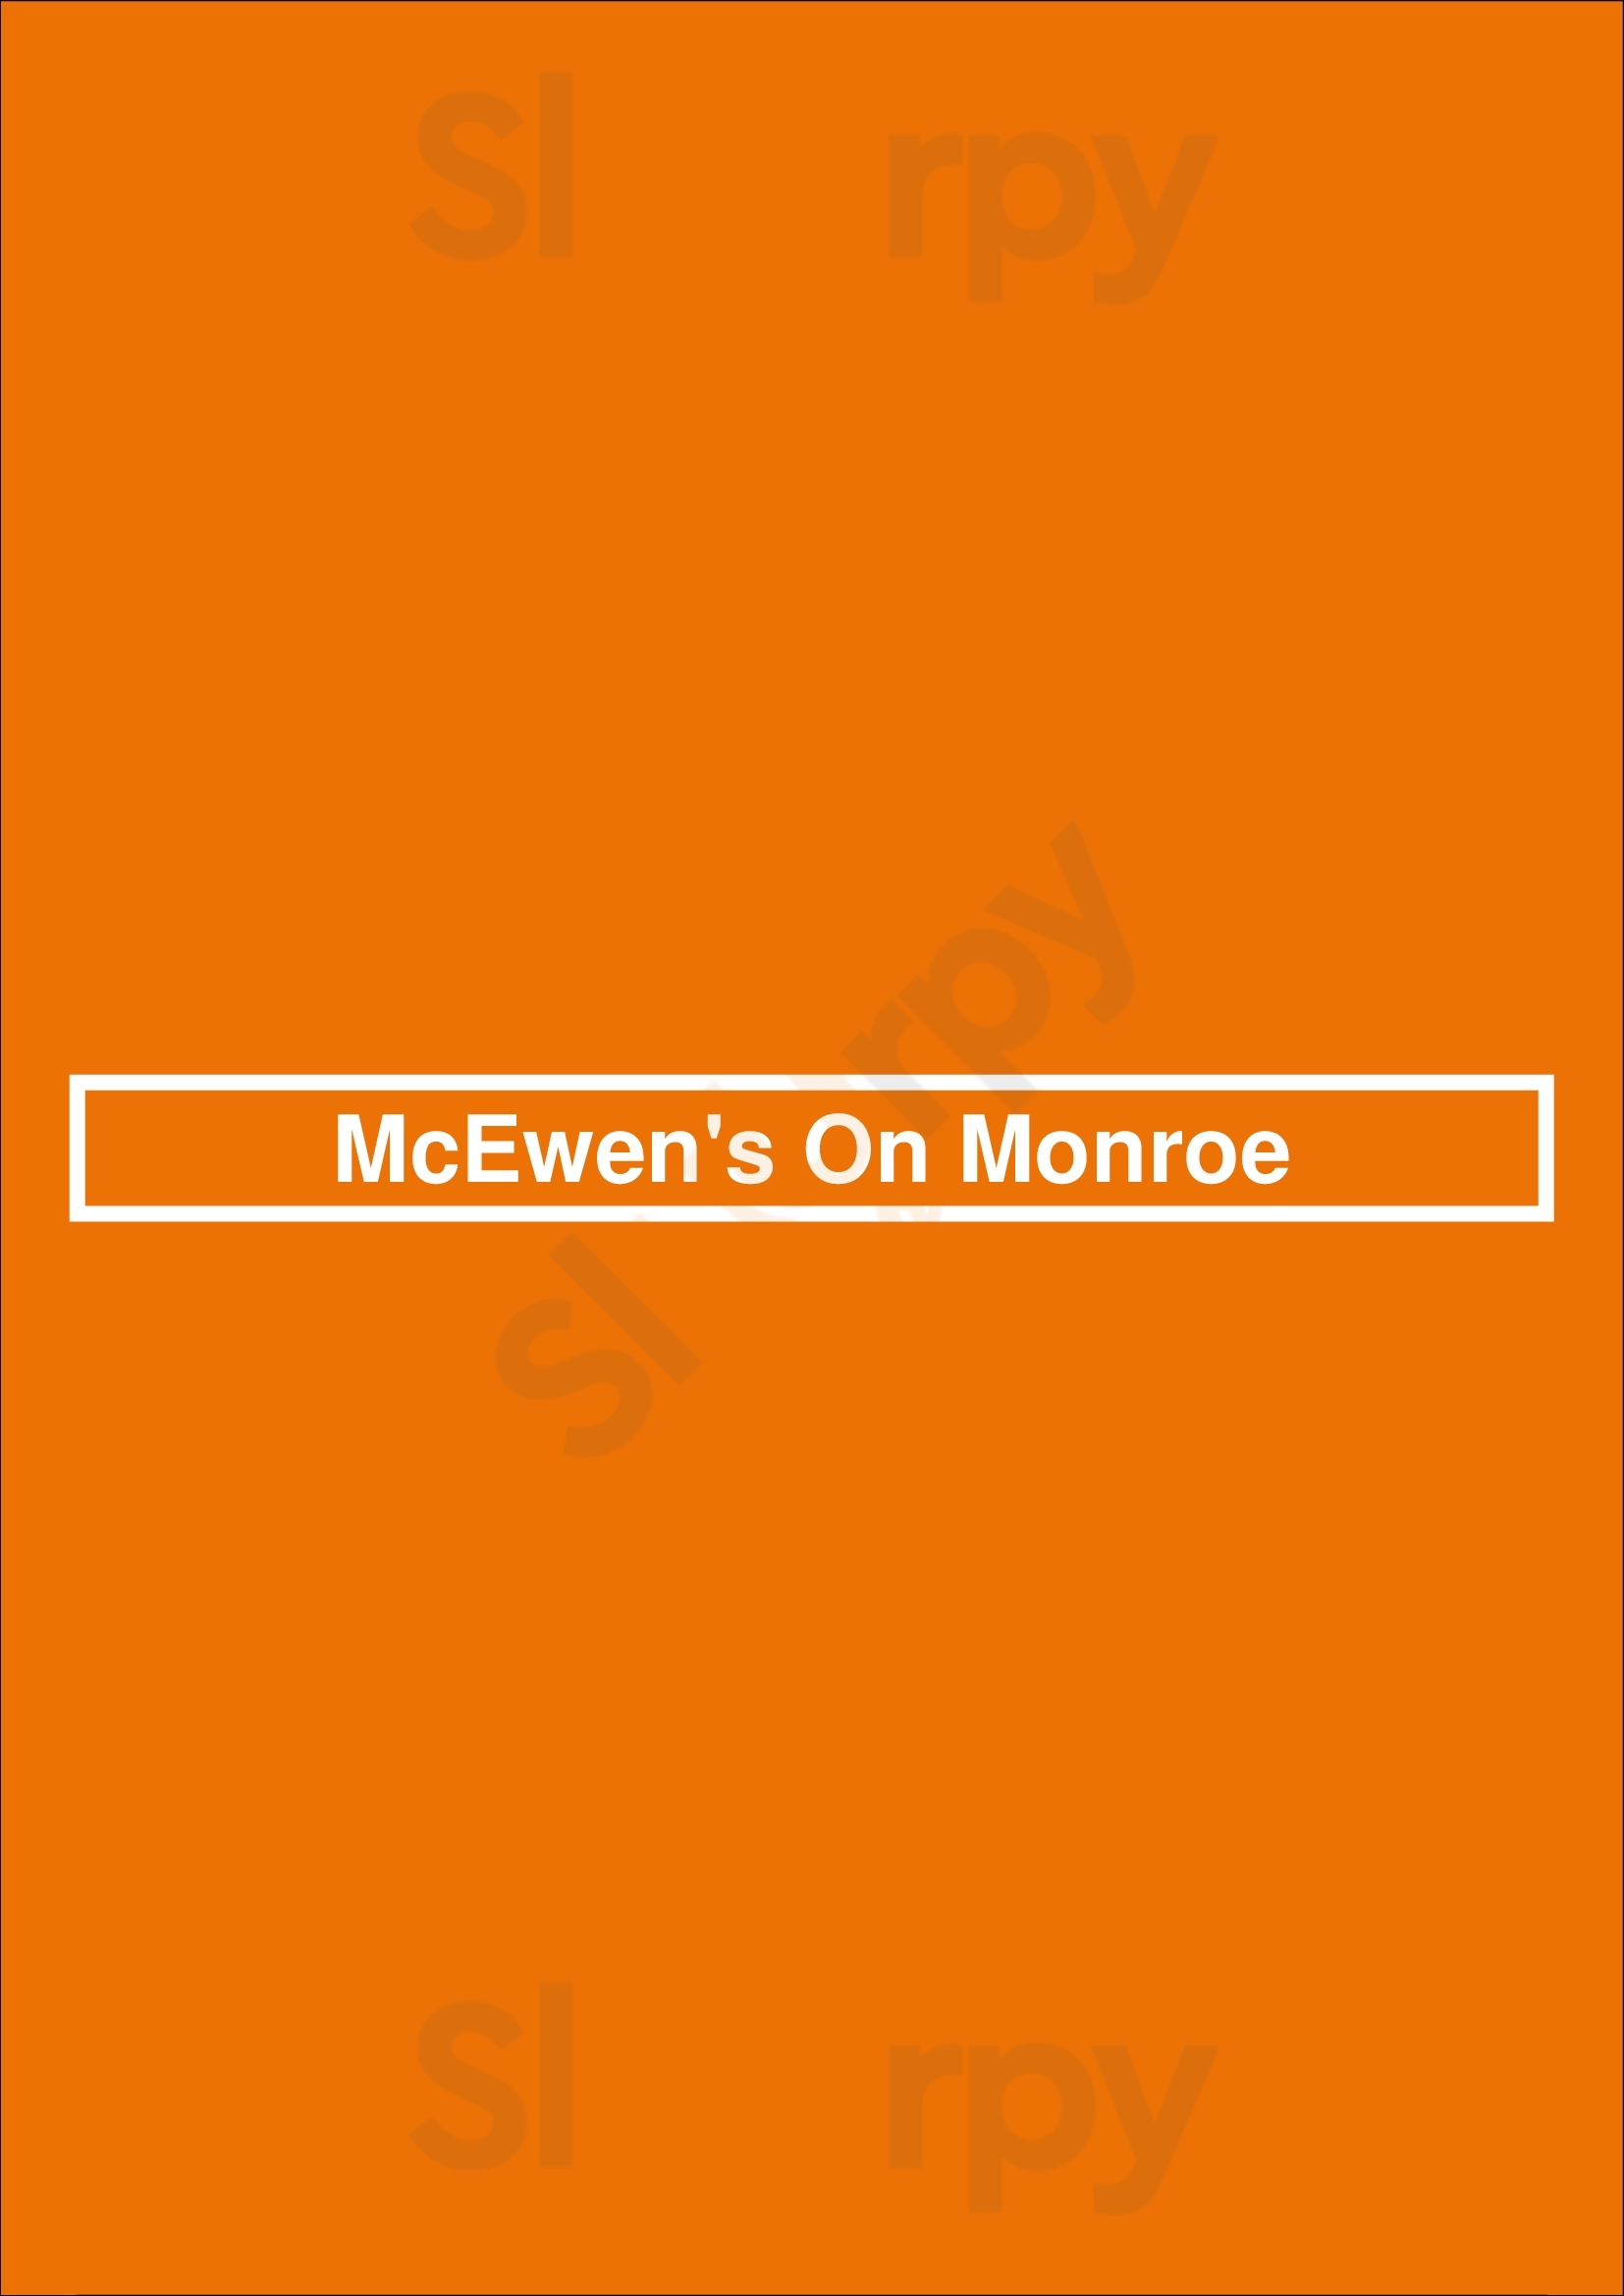 Mcewen's Memphis Memphis Menu - 1